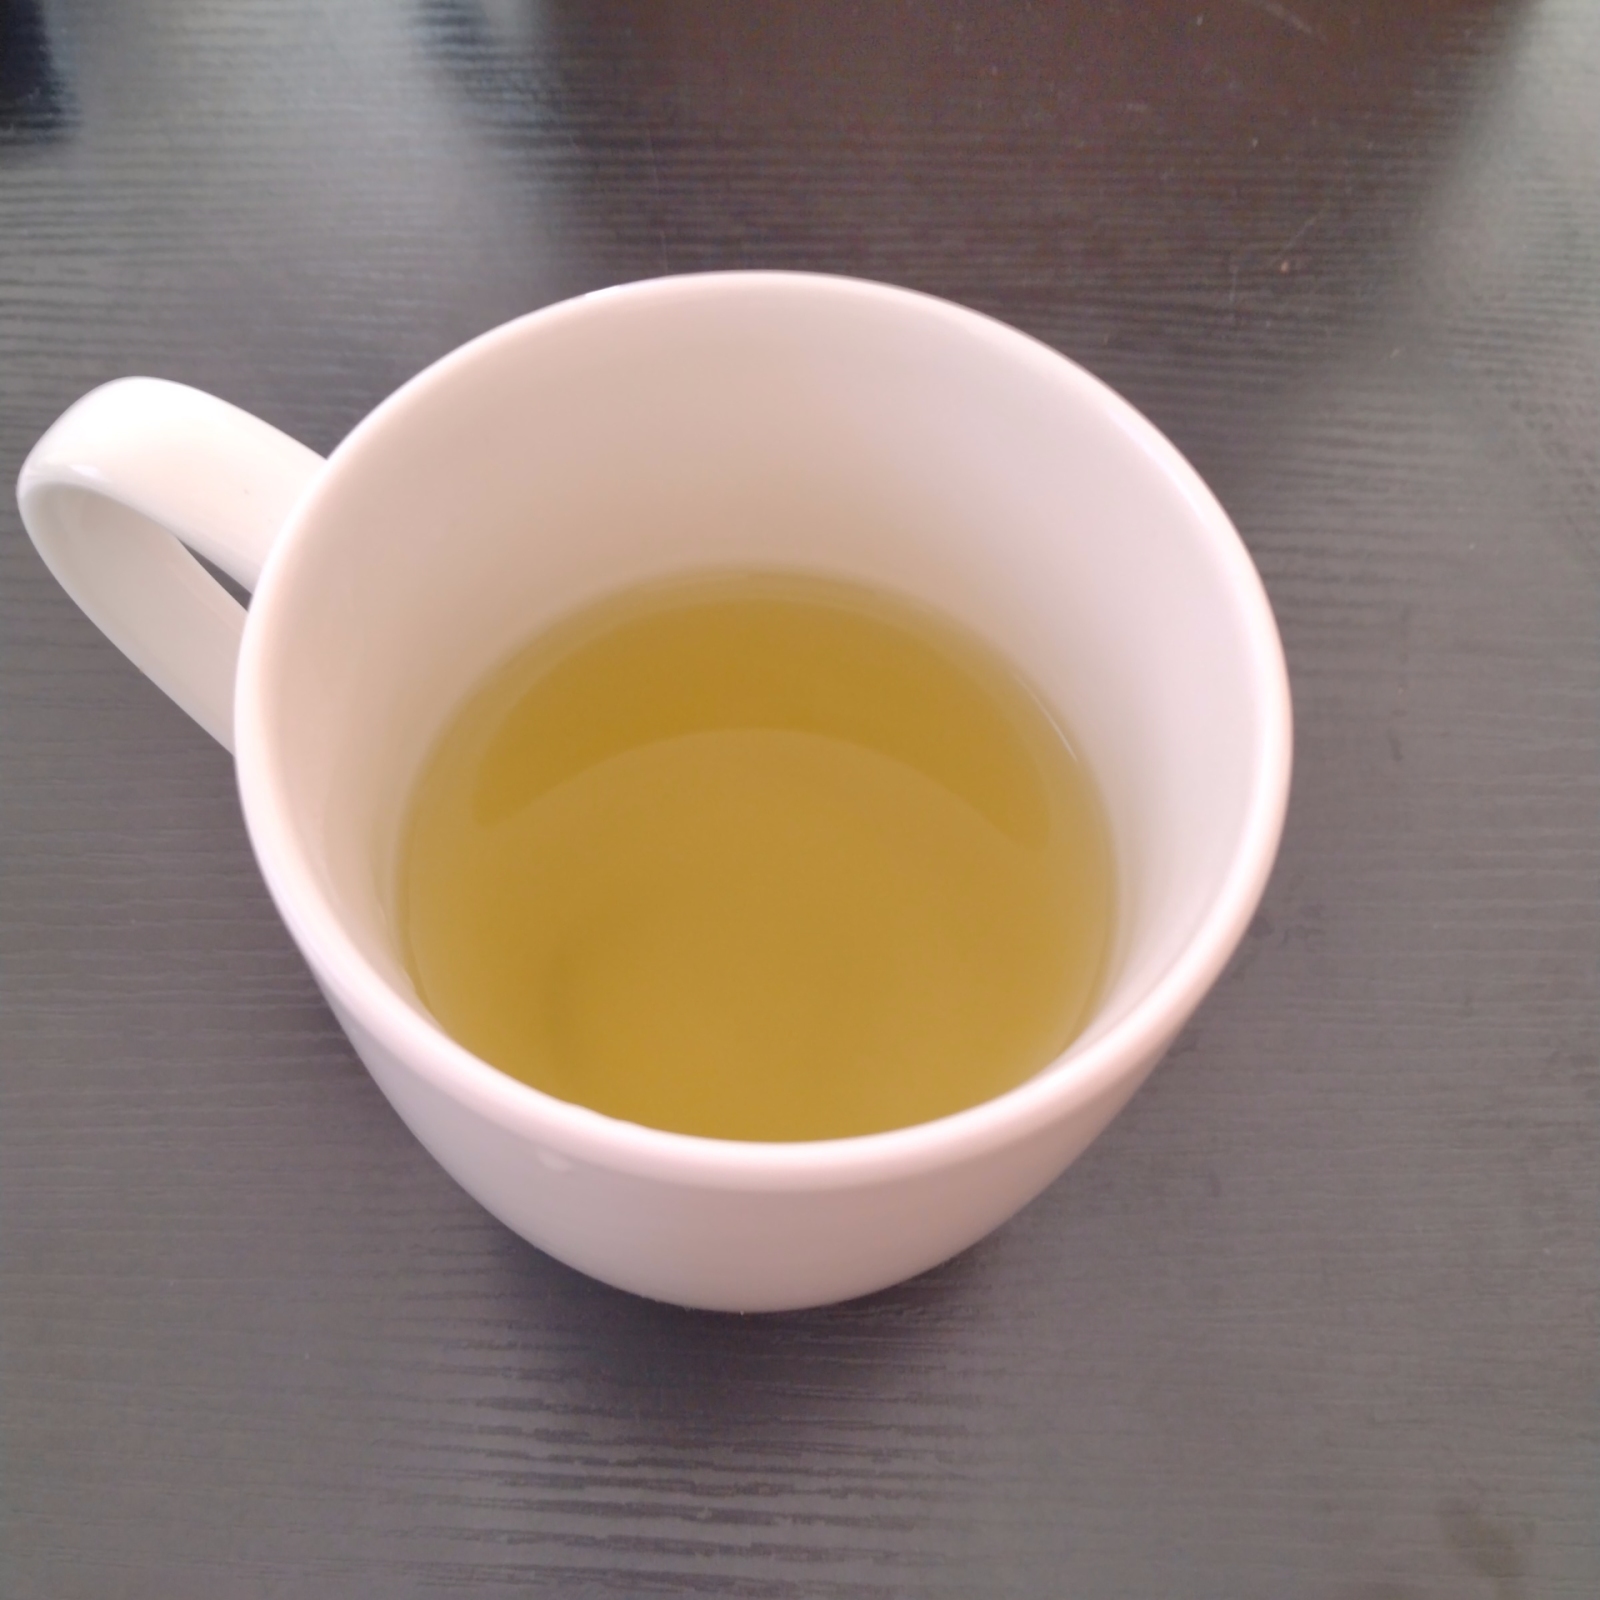 レモン汁とうまみ調味料を入れた緑茶